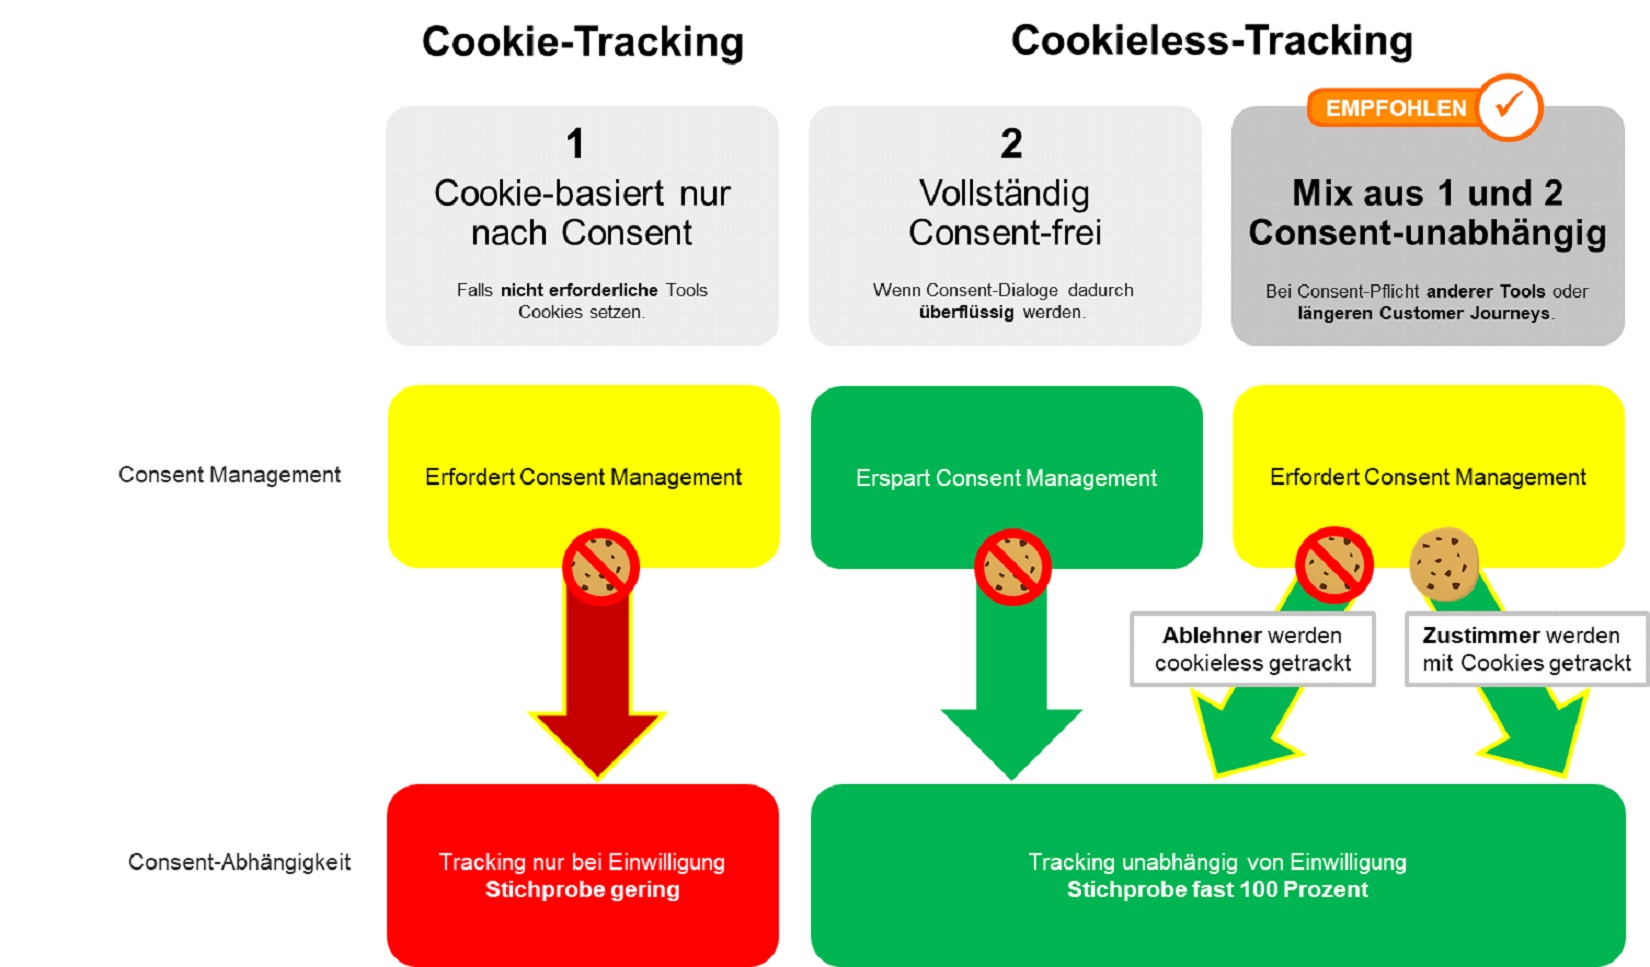 Tracking-Szenarien mit und ohne Cookies sowie im hybriden Mix. Quelle: etracker